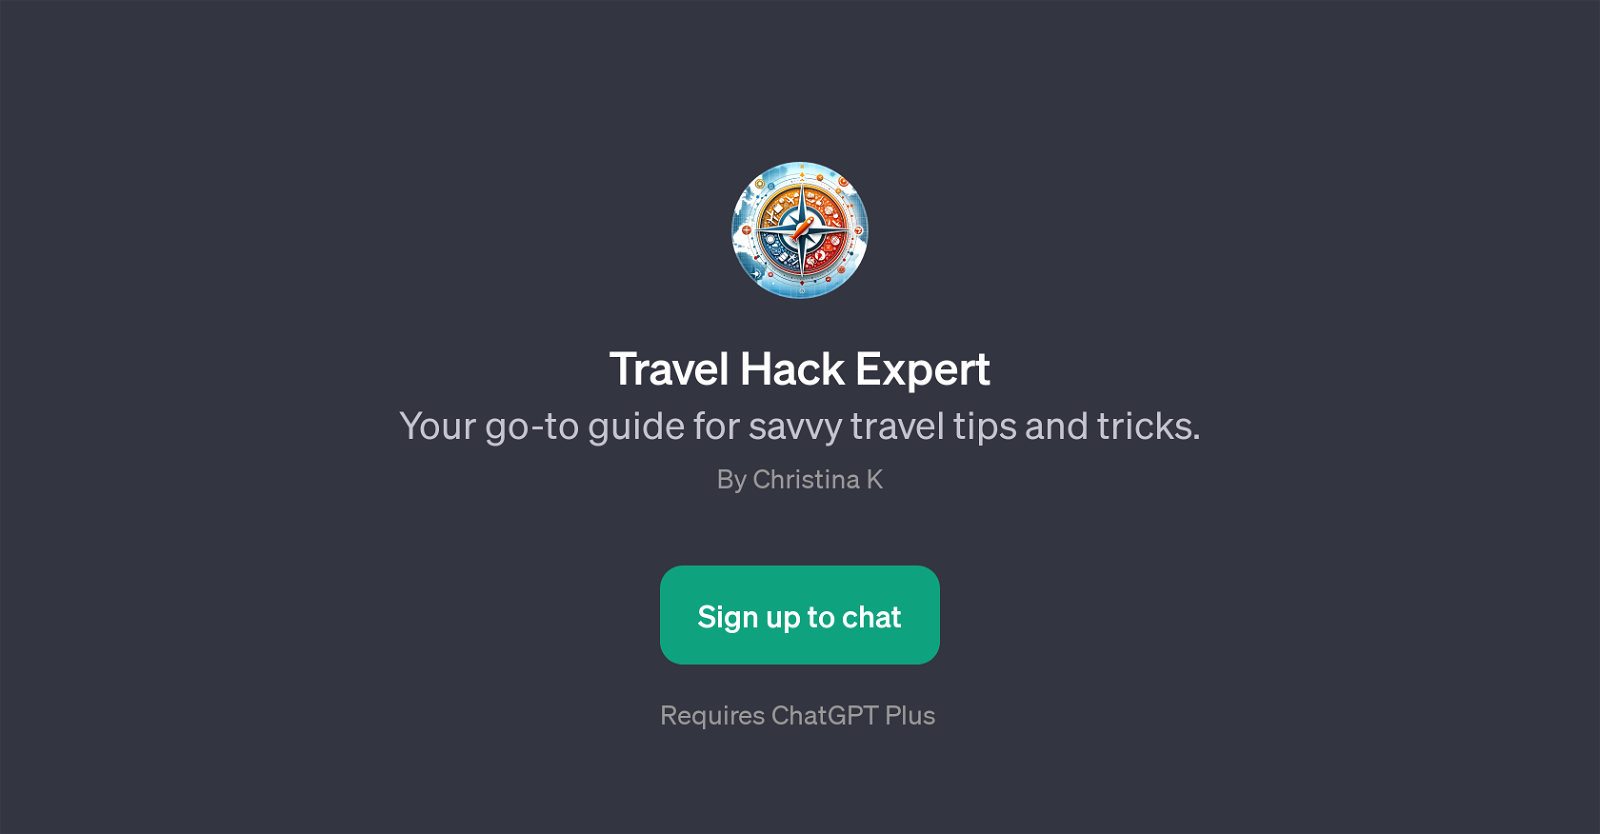 Travel Hack Expert website